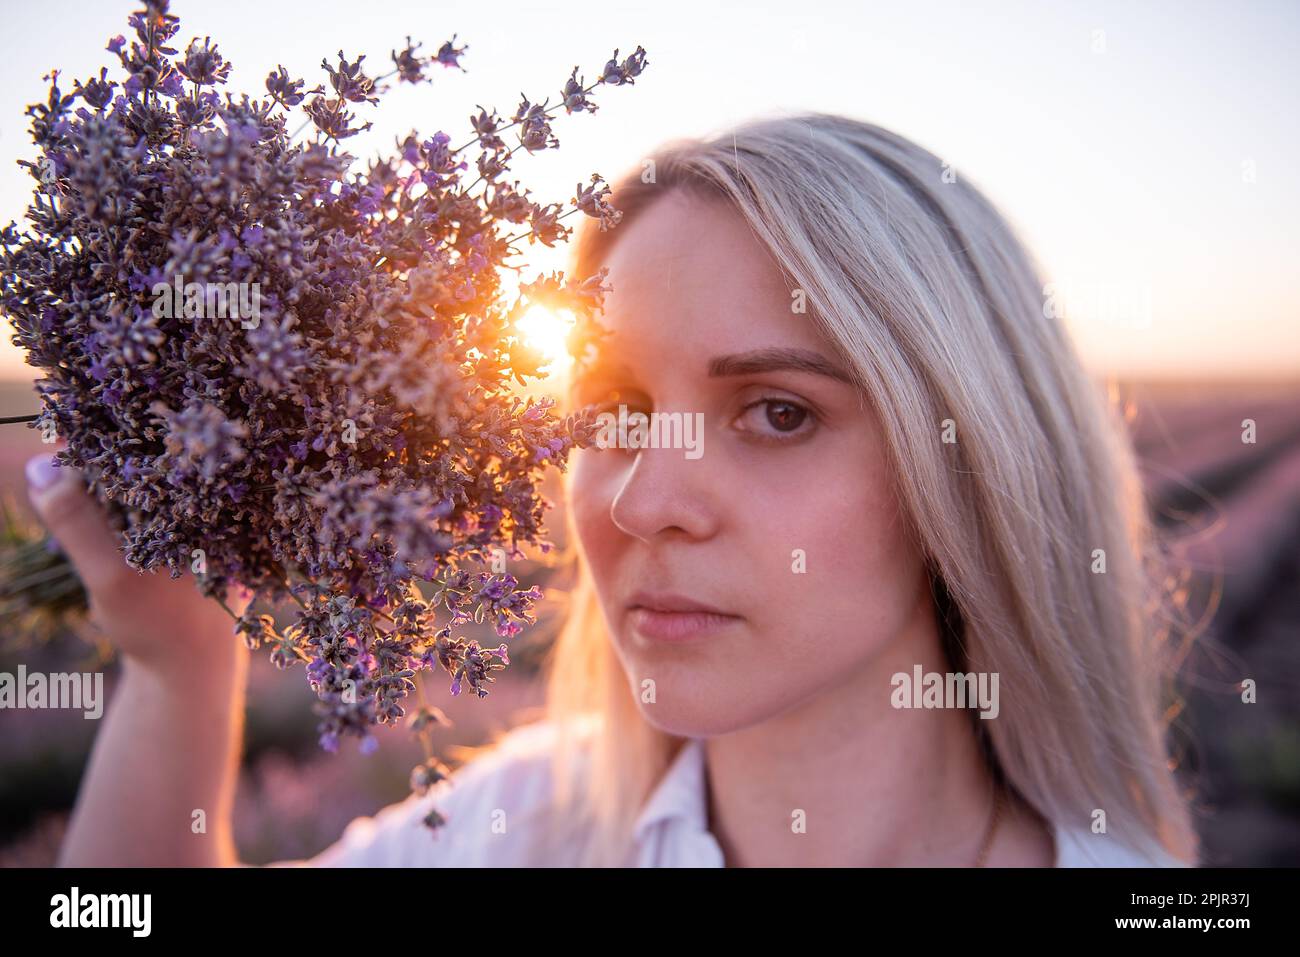 Nahaufnahme einer jungen Frau mit einem Strauß lila Lavendel vor dem Gesicht. Blondes Jahrtausendmädchen mit sauberer Haut ohne Make-up in Su-Strahlen Stockfoto